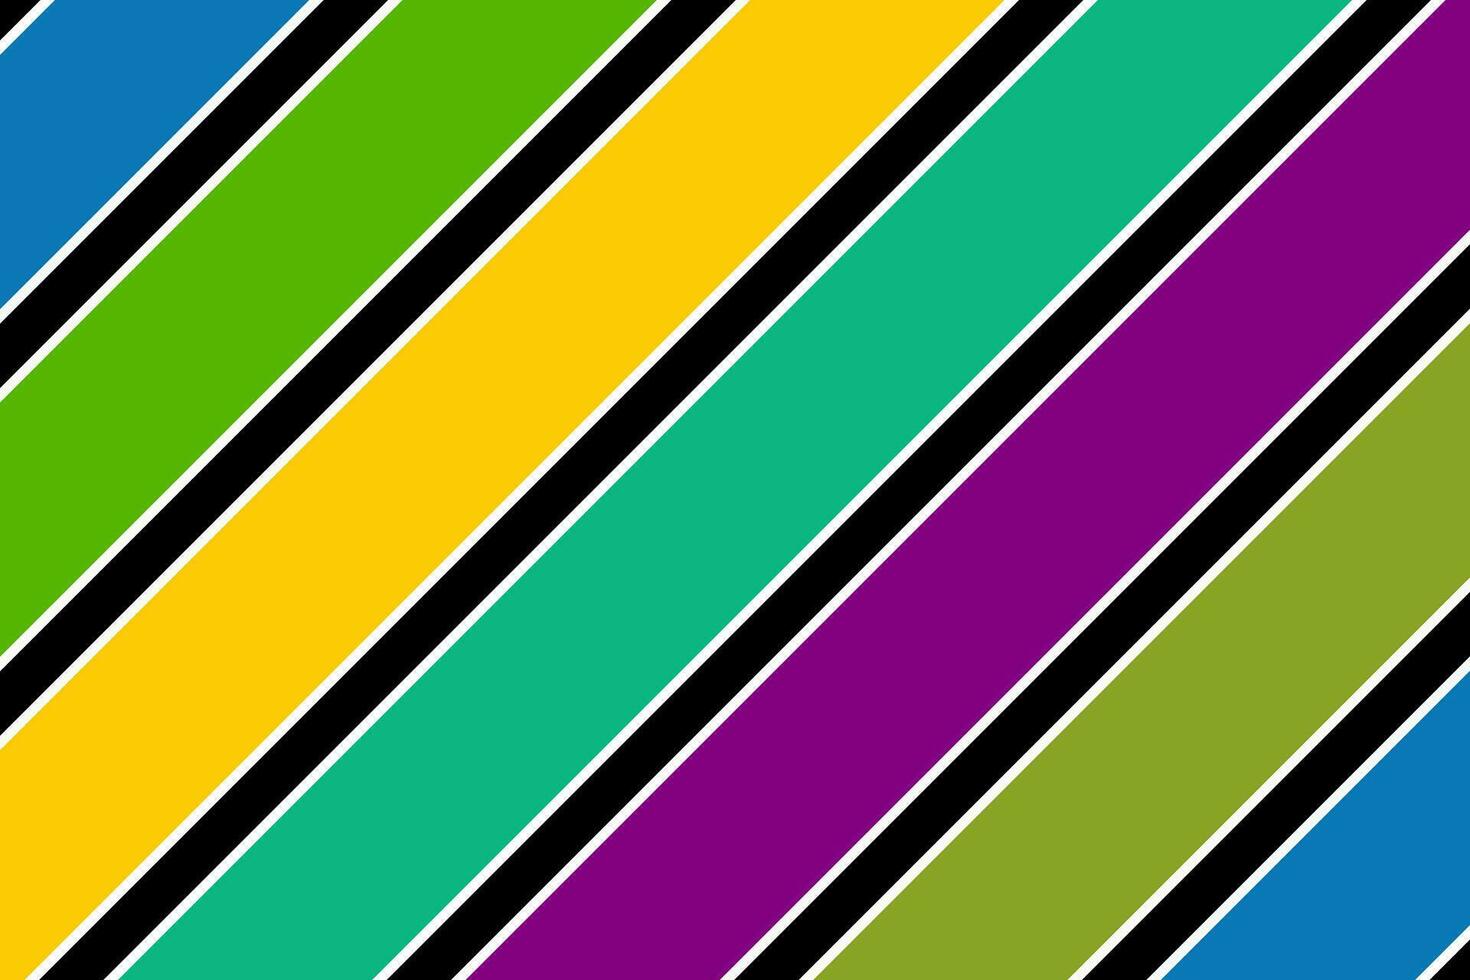 roxo, verde, amarelo, azul, branco e Preto diagonal linhas desatado padronizar. inclinado listras estrutura fundo vetor ilustração.